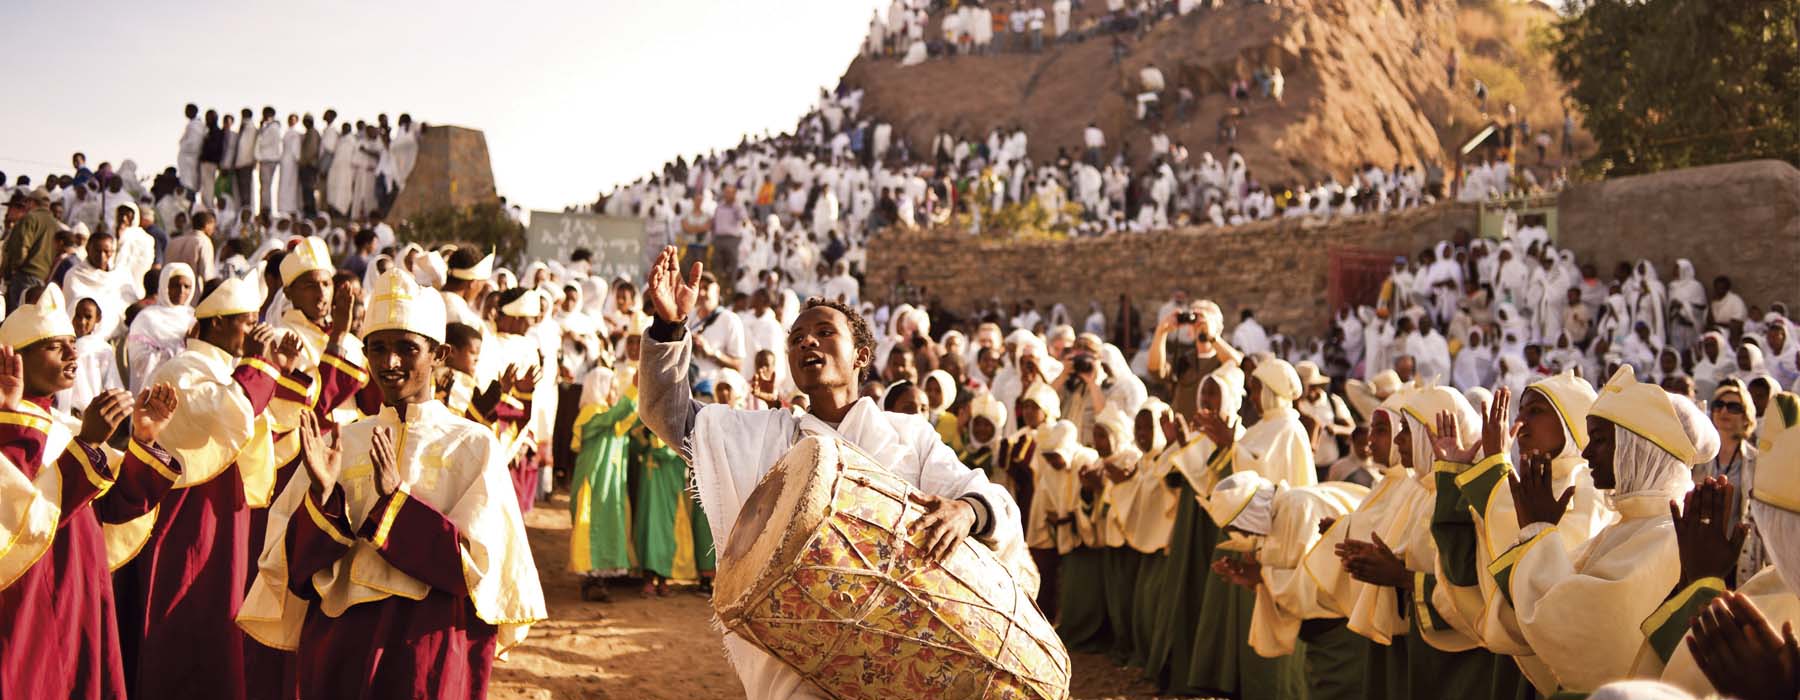 Voyages intérieurs Ethiopie